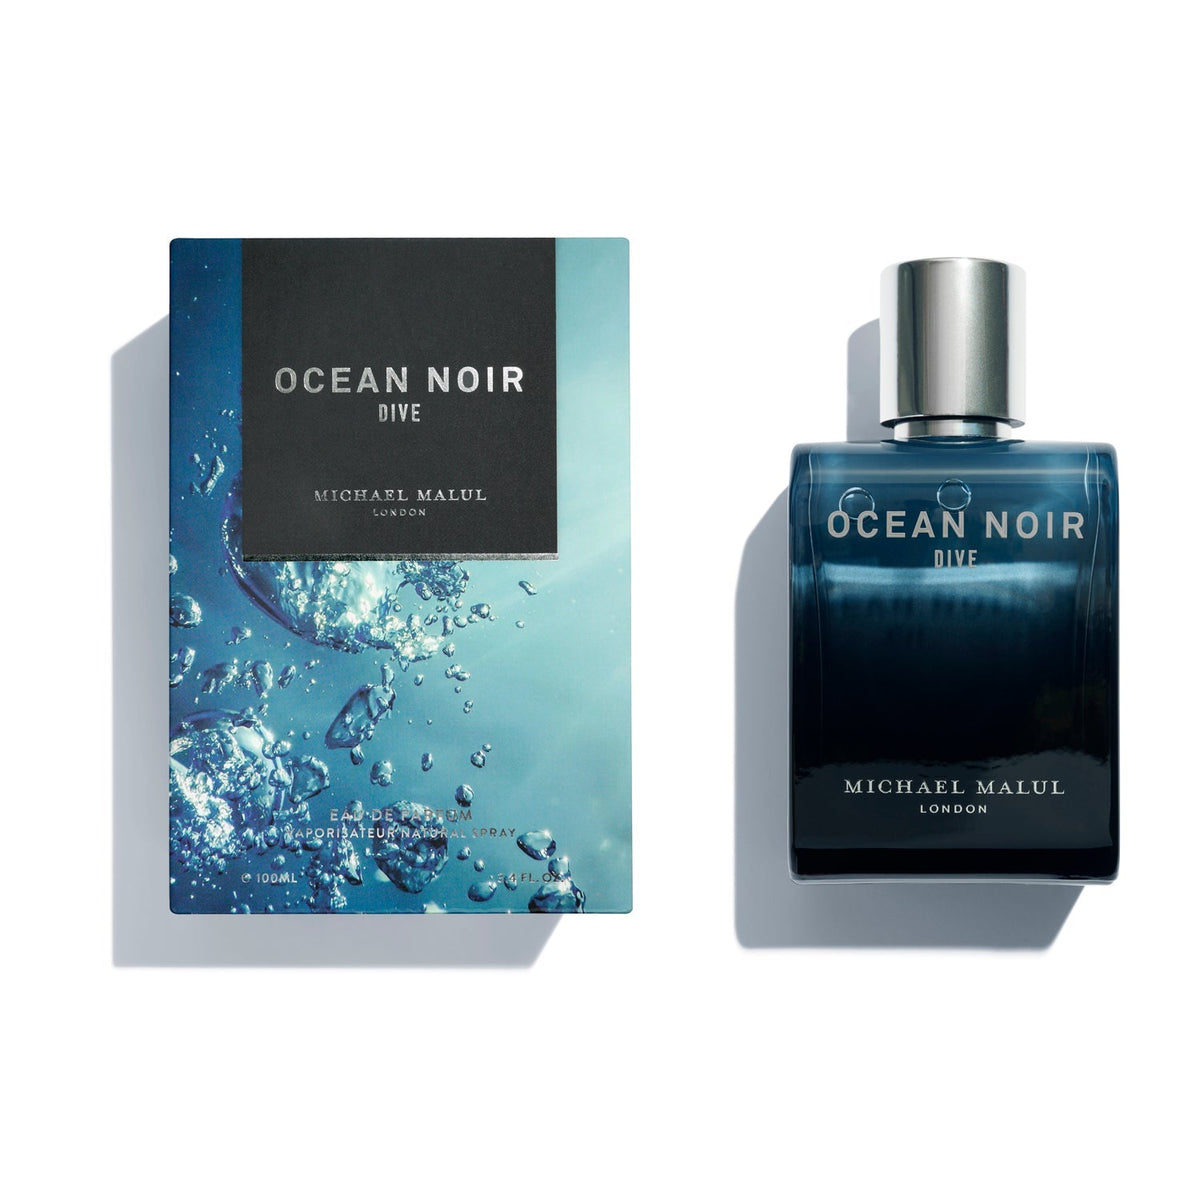 Ocean Noir Dive Eau De Parfum For Men By Michael Malul